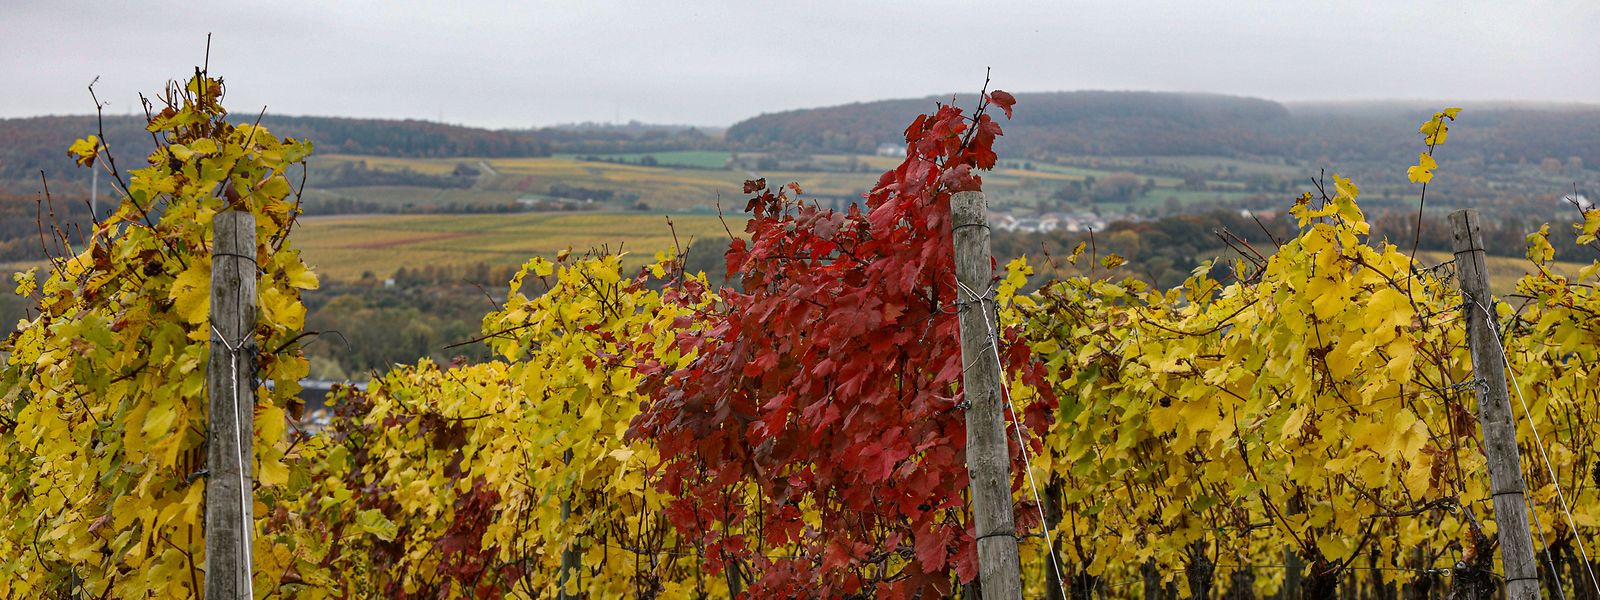 Die Werte für die diesjährige Weinlese liegen nach den Angaben des staatlichen Weinbauinstituts im zehnjährigen Durchschnittsbereich. 